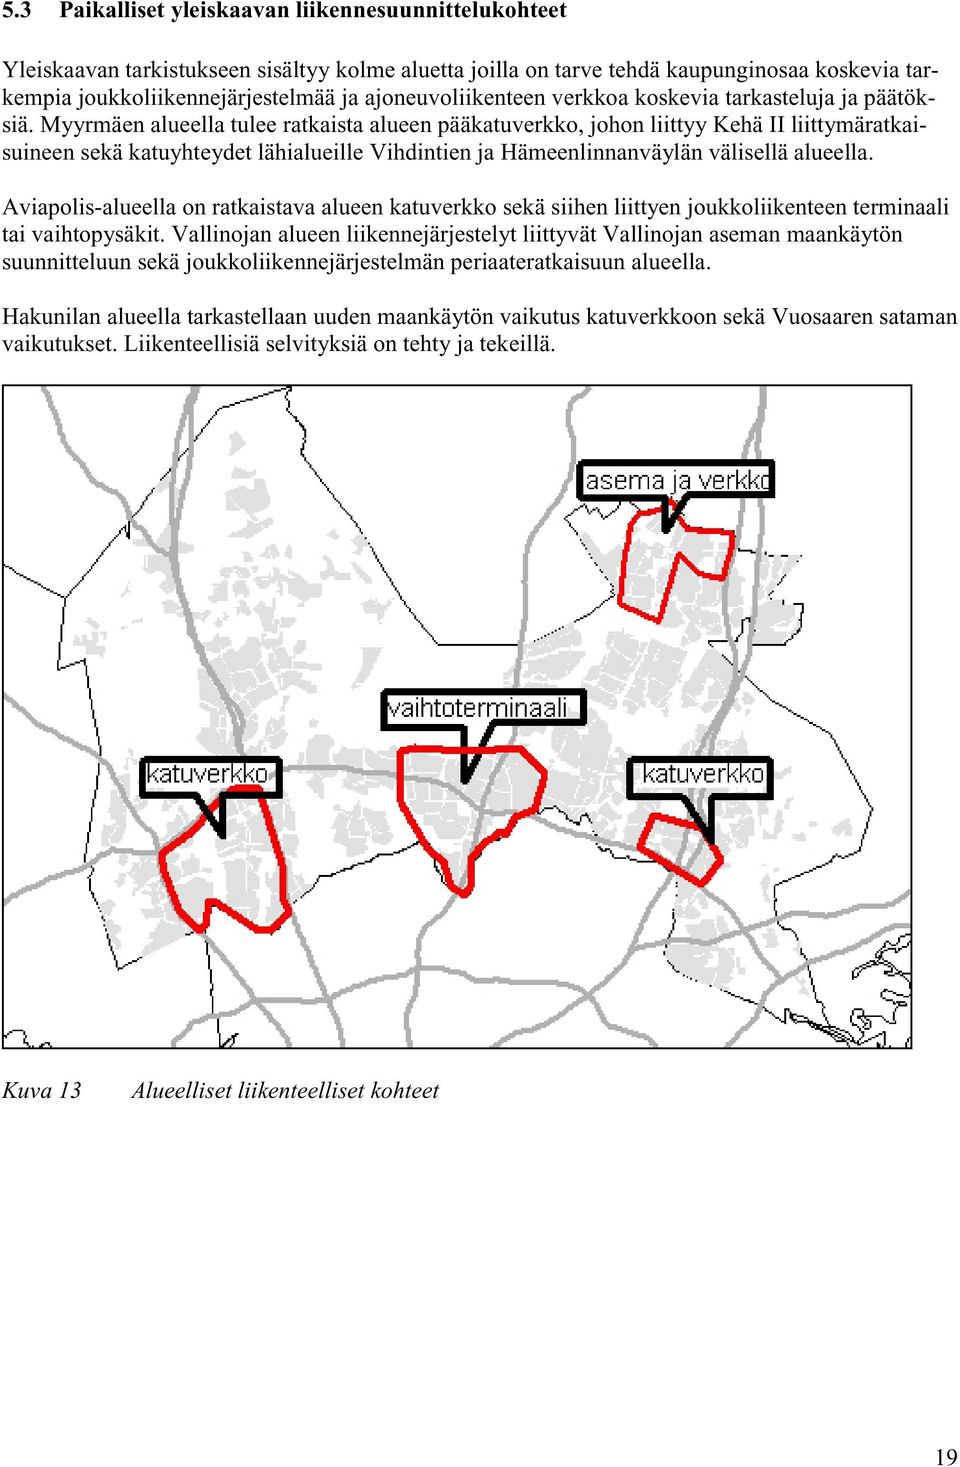 Myyrmäen alueella tulee ratkaista alueen pääkatuverkko, johon liittyy Kehä II liittymäratkaisuineen sekä katuyhteydet lähialueille Vihdintien ja Hämeenlinnanväylän välisellä alueella.